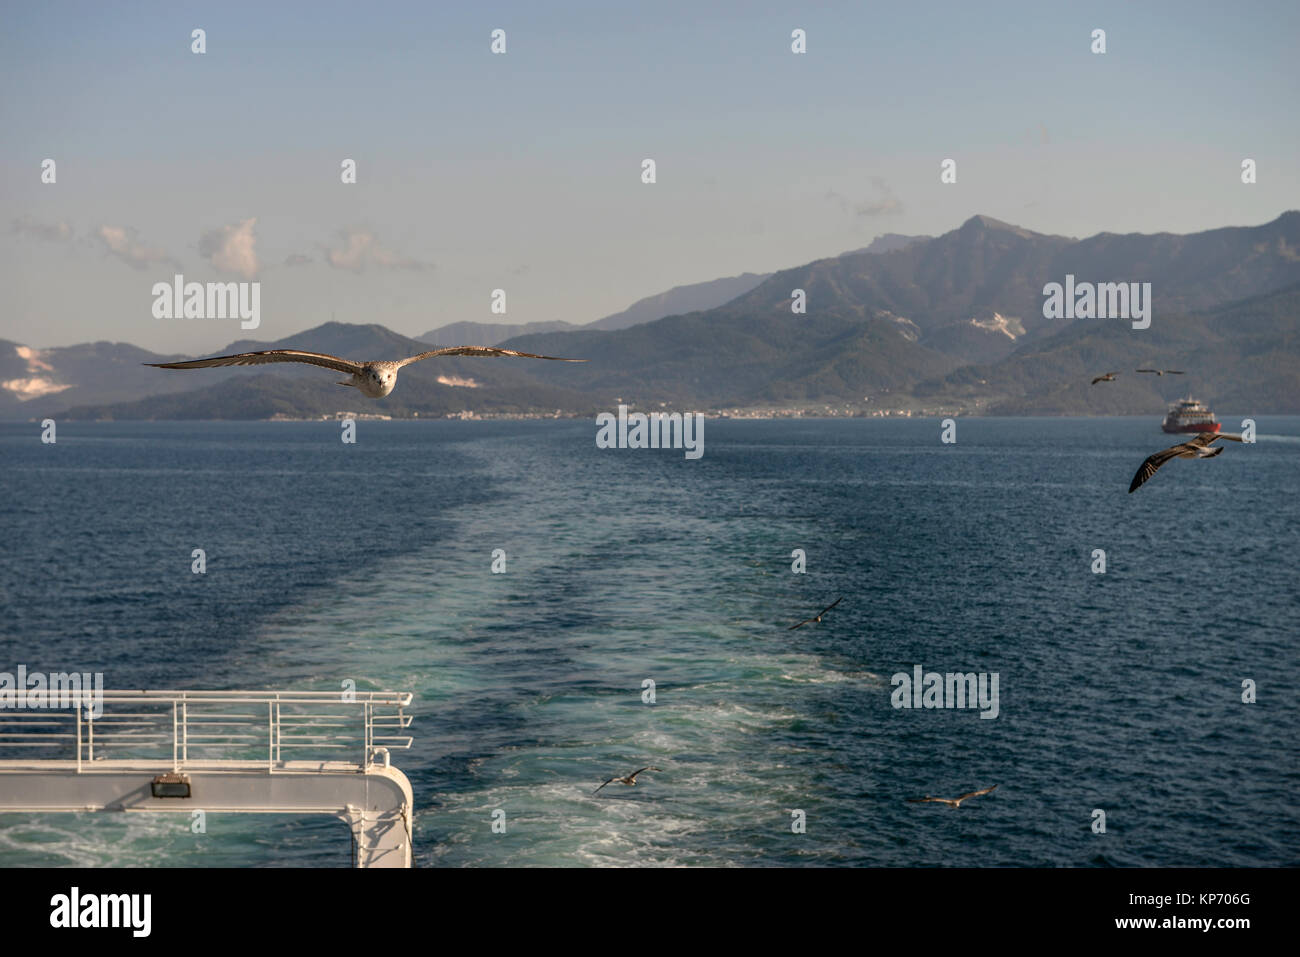 Möwe Vogel fliegen Seite Nahaufnahme, blured Schiff im Hintergrund Stockfoto